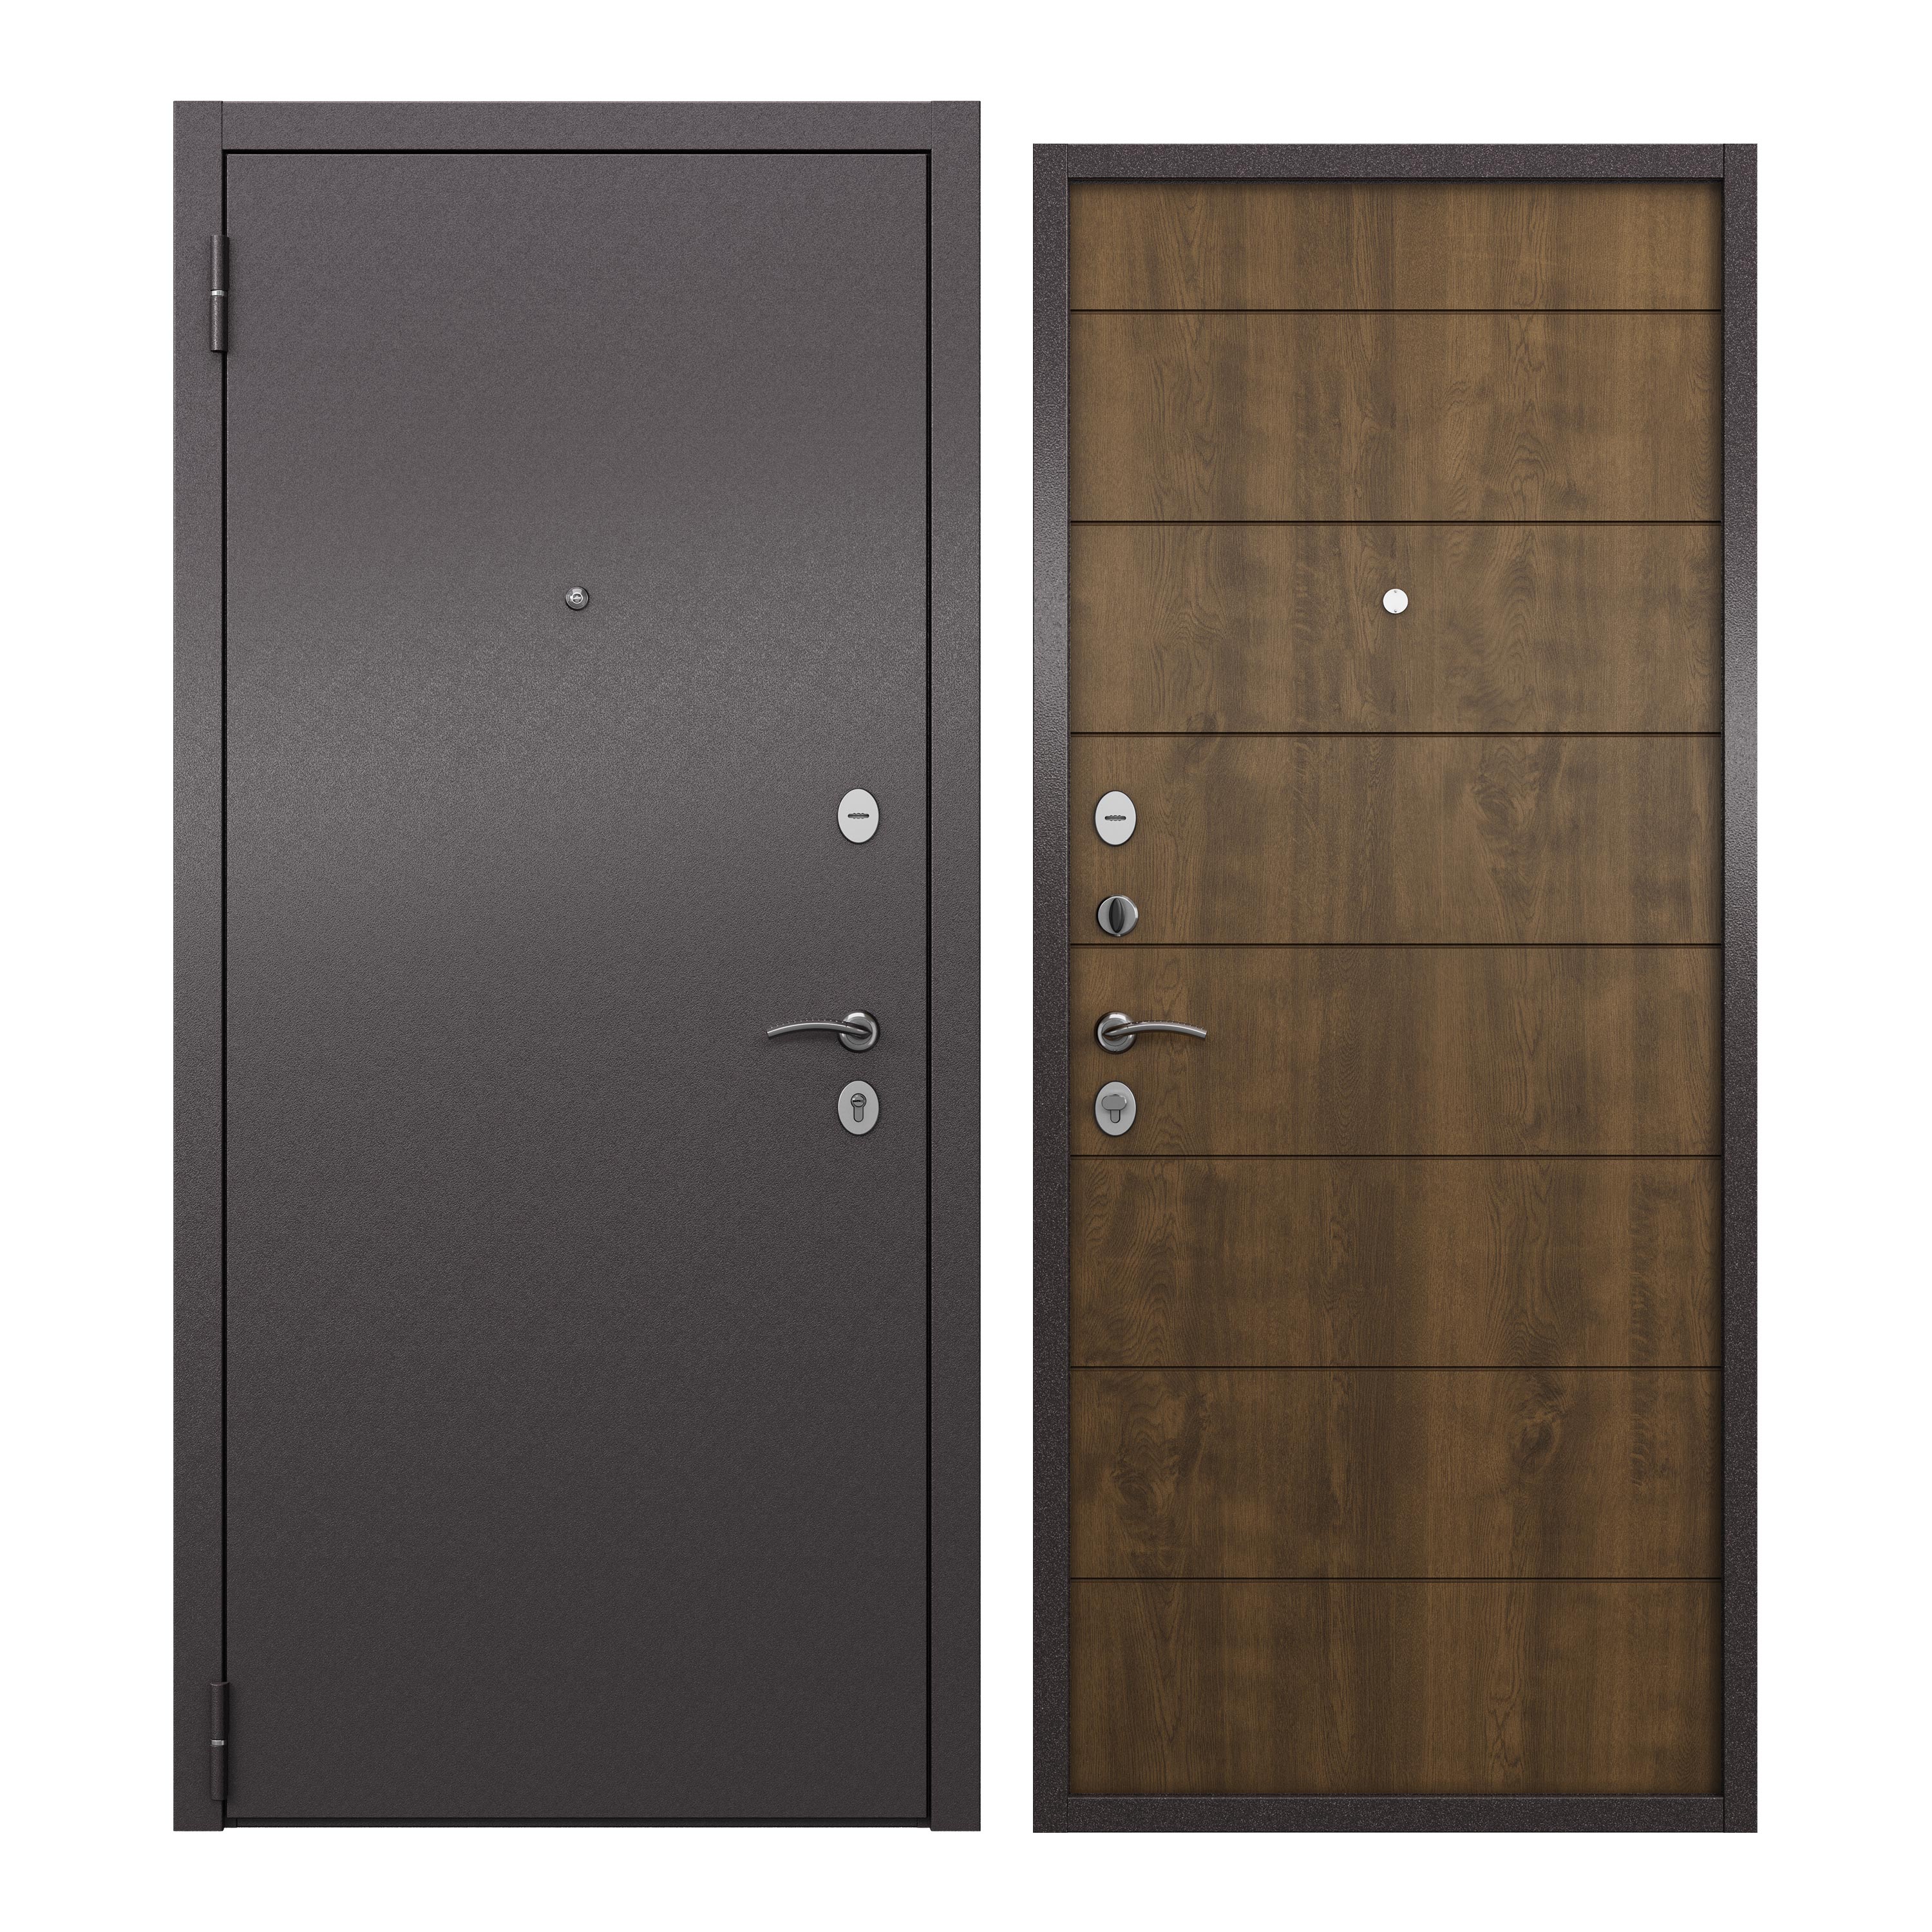 Дверь входная для квартиры ProLine металлическая Apartment 860х2050, левая, коричневый